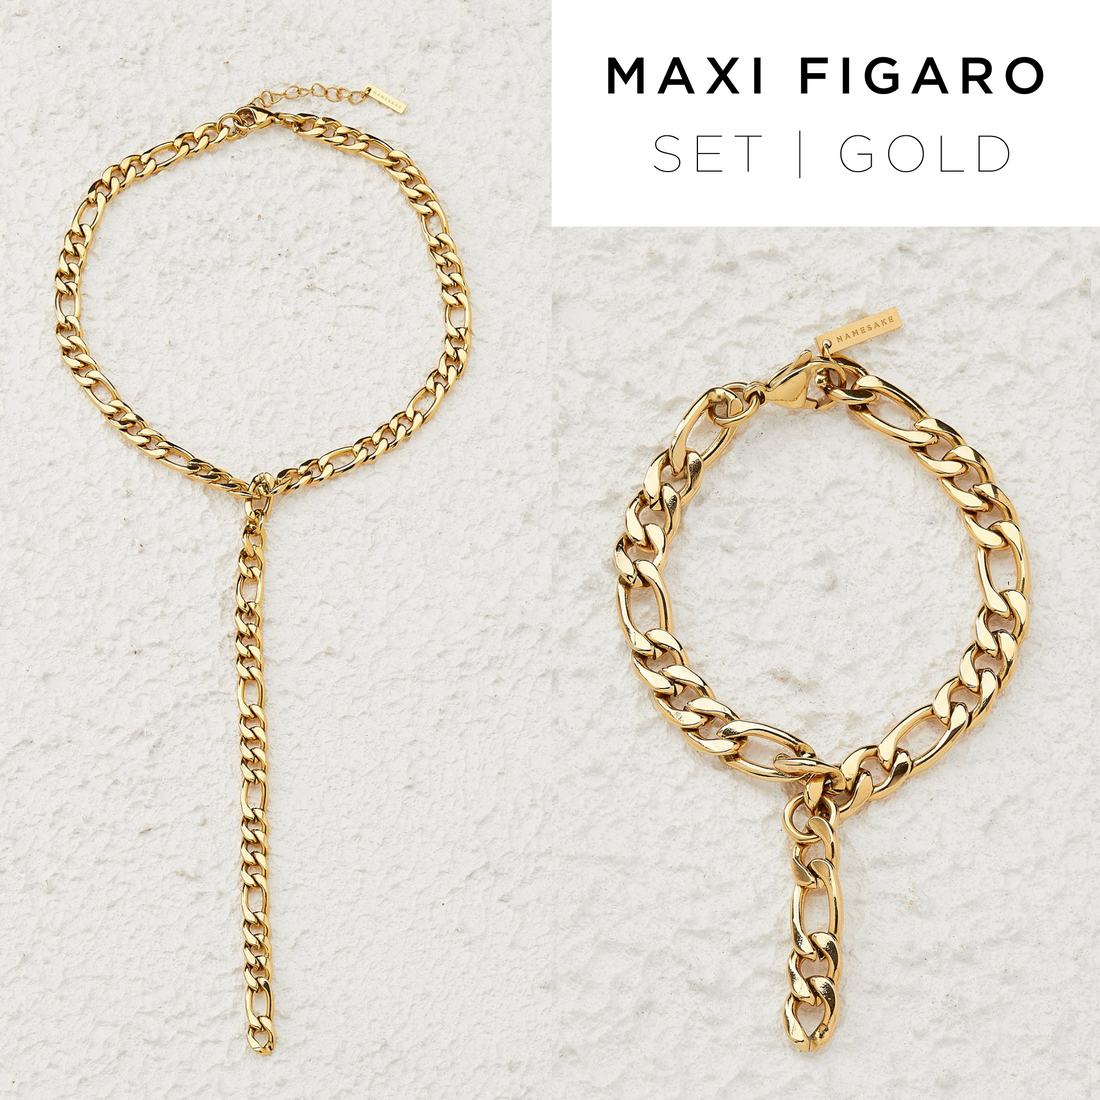 MAXI FIGARO SET | GOLD